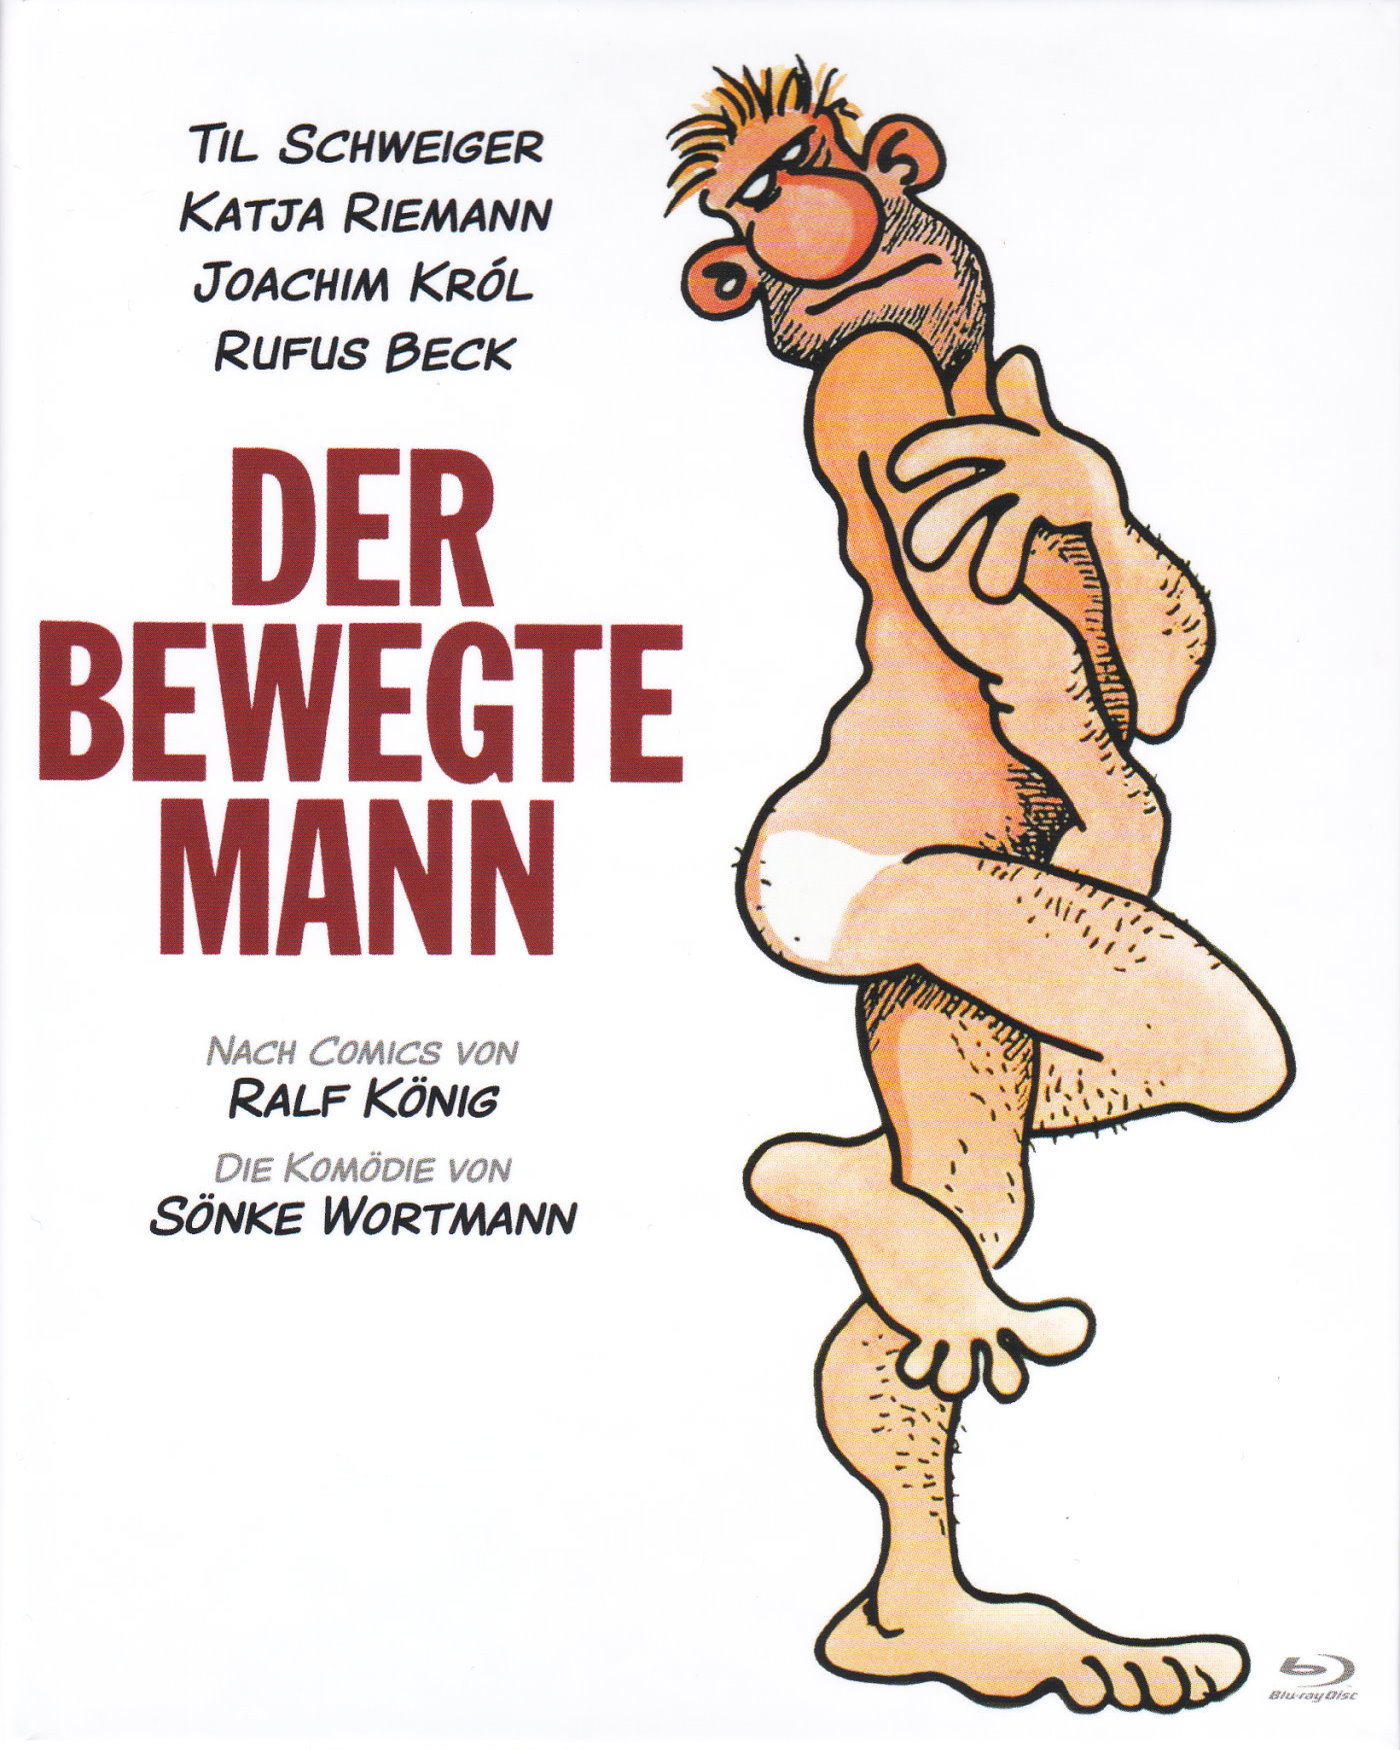 Cover - Der Bewegte Mann.jpg